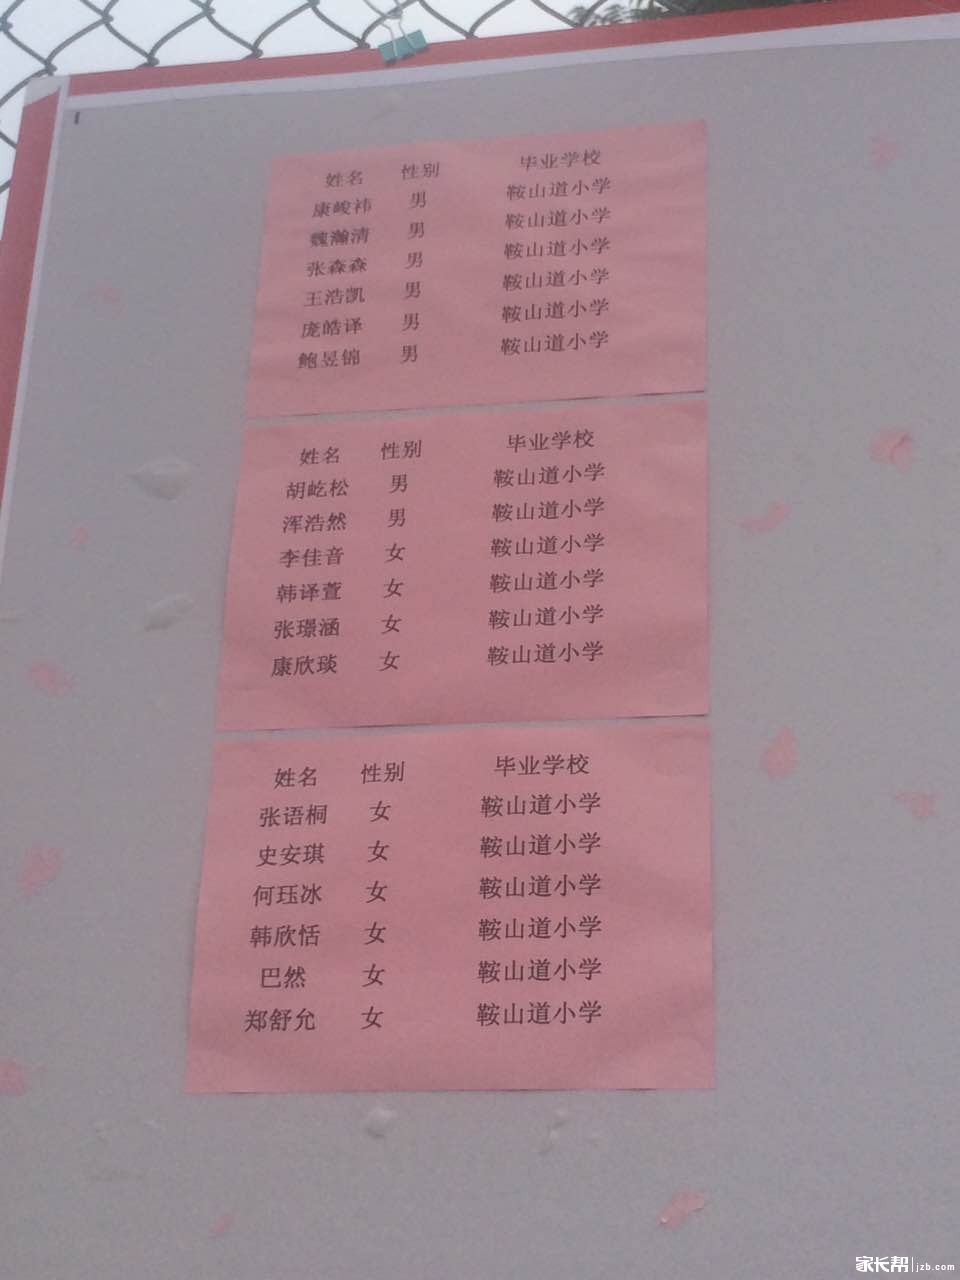 2016天津双菱中学小升初录取名单